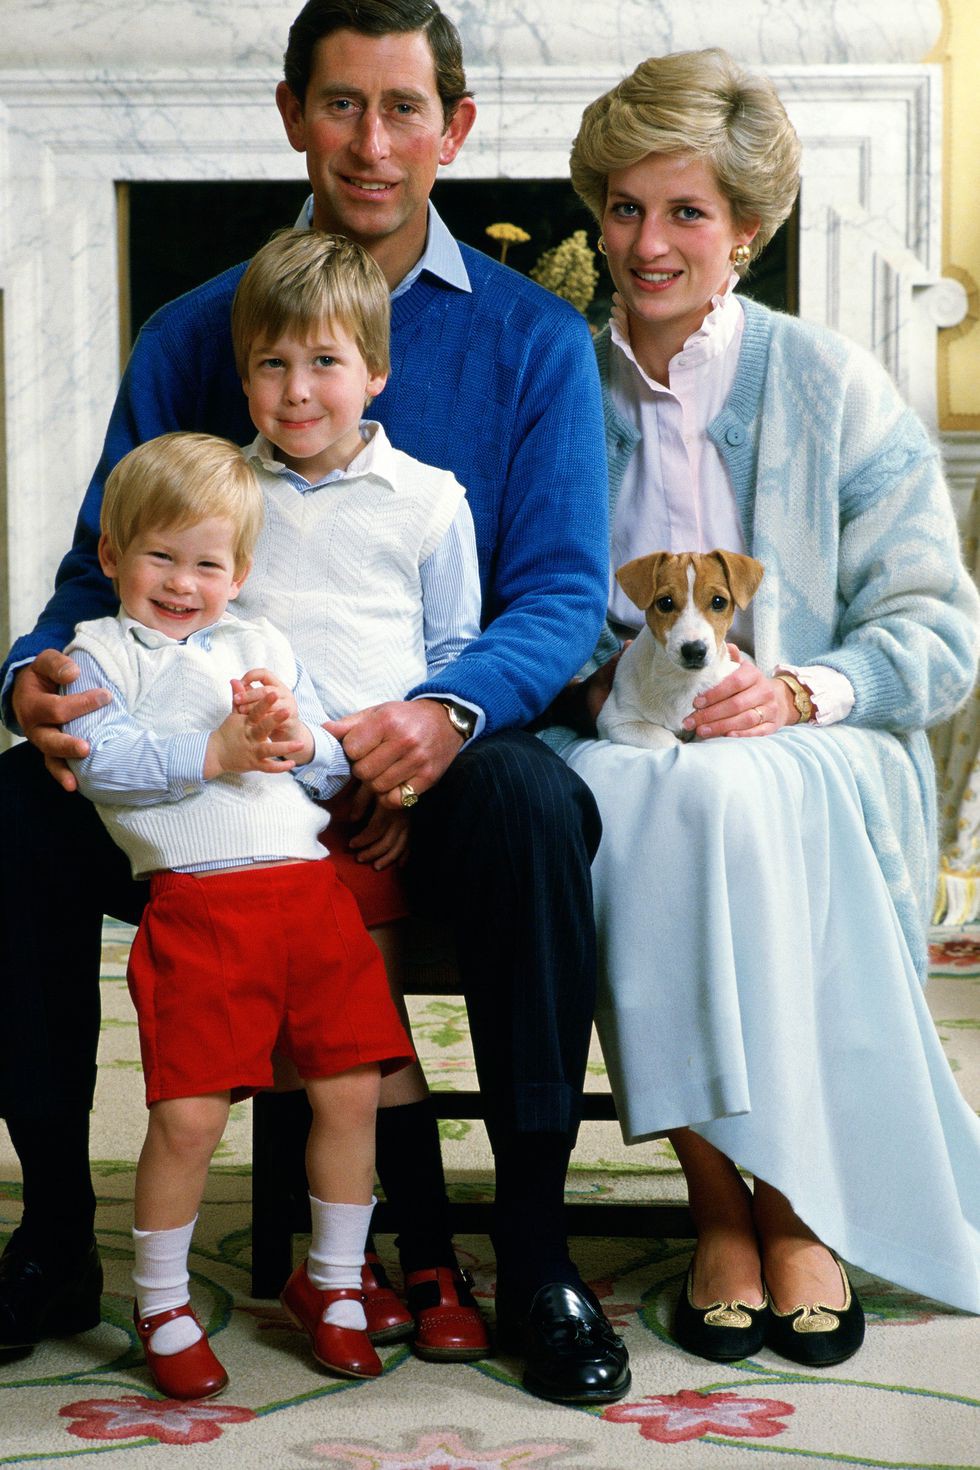 Xem 25 bức ảnh chân dung của Hoàng gia Anh, bạn sẽ hiểu thêm về 8 thế hệ của gia đình quyền lực này - Ảnh 15.